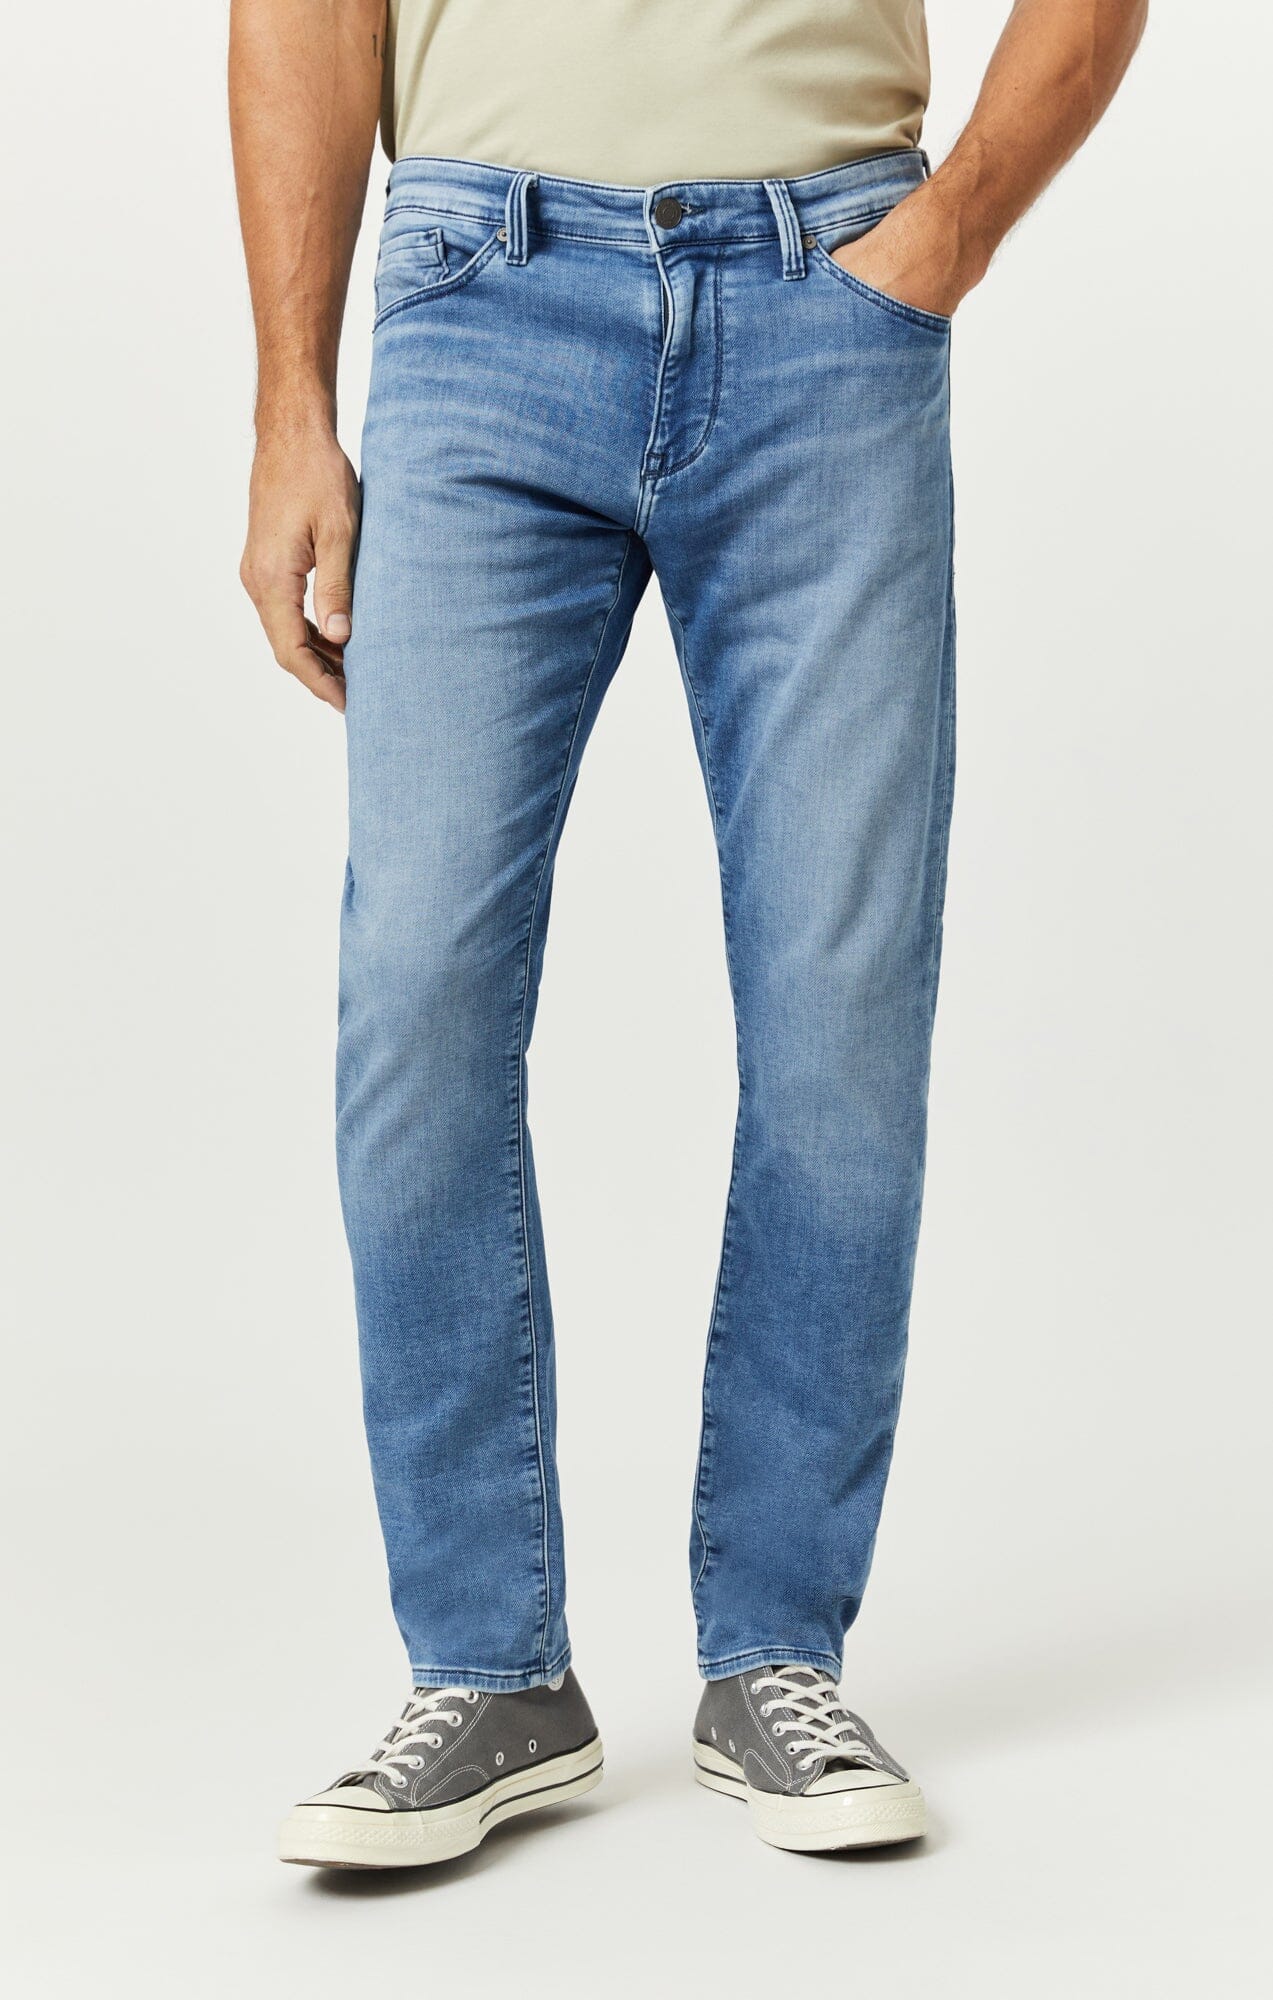 Straight Mavi | for Jeans® Men Leg Jeans - Men\'s Straight Shop Jeans